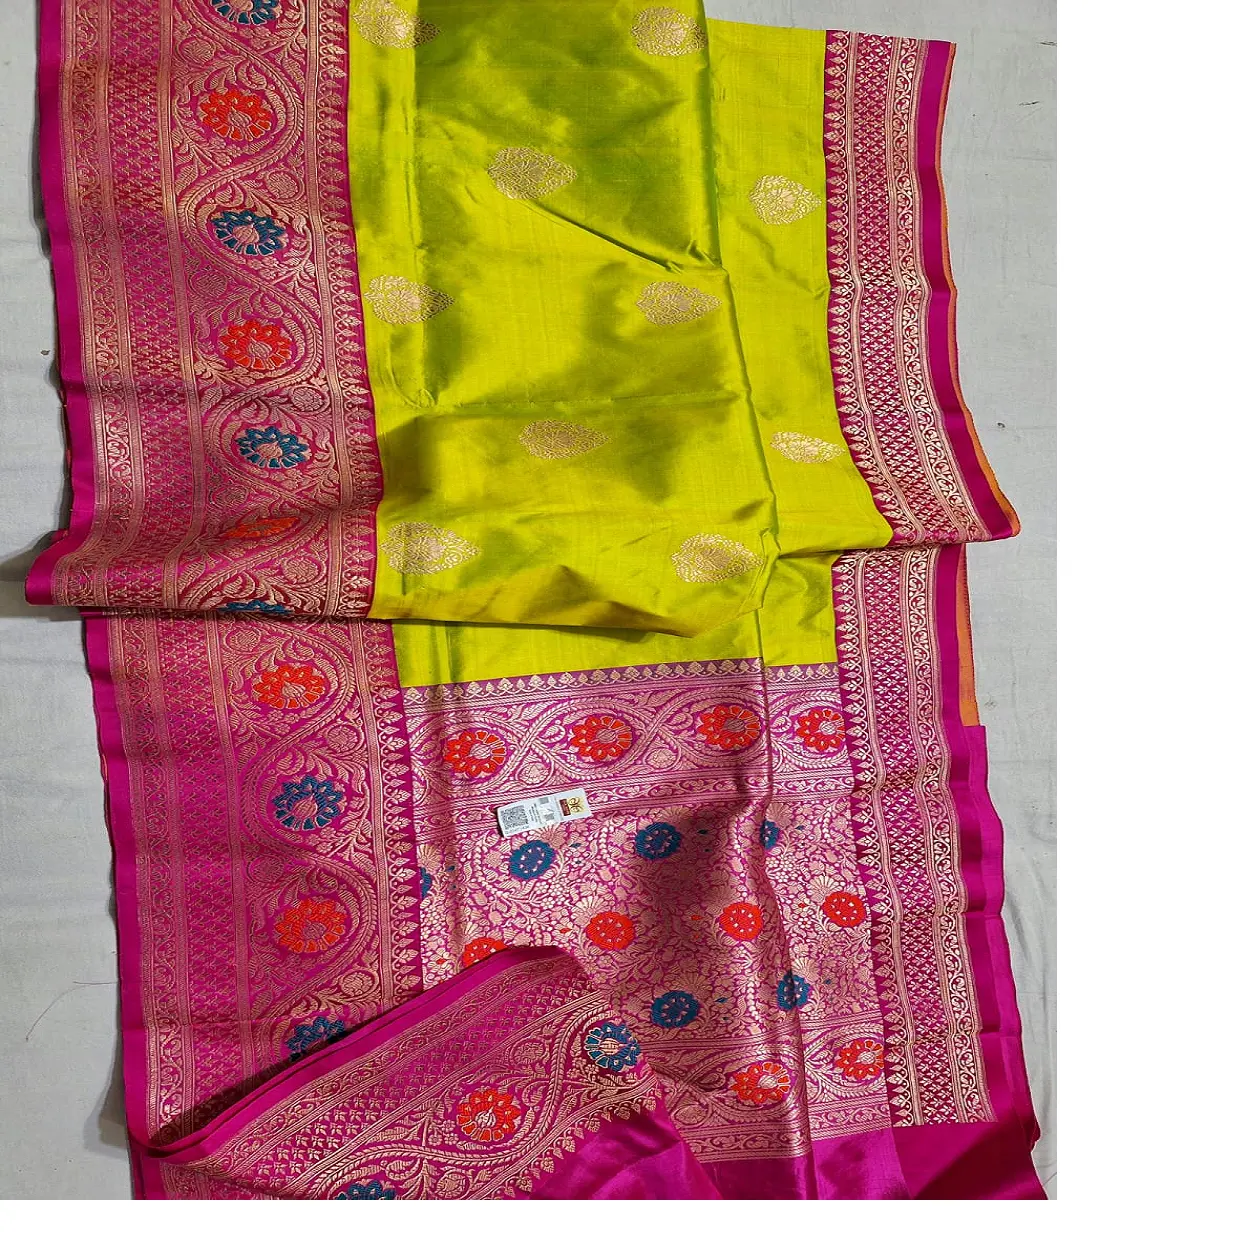 Sari in broccato di seta su misura con grandi bordi multicolori disponibili in vivaci colori vivaci ideali per la rivendita